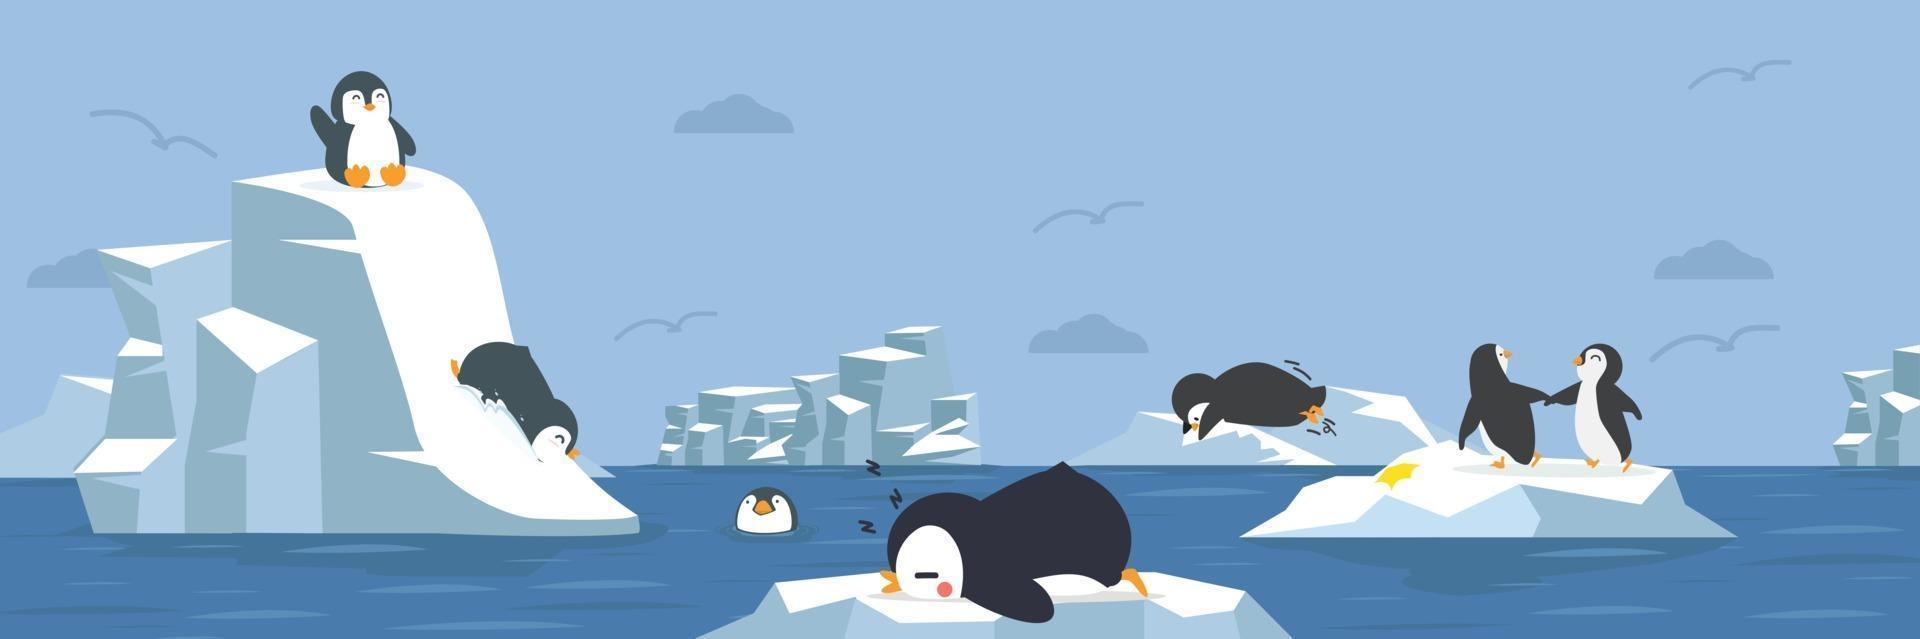 pingüinos animales con fondo ártico vector